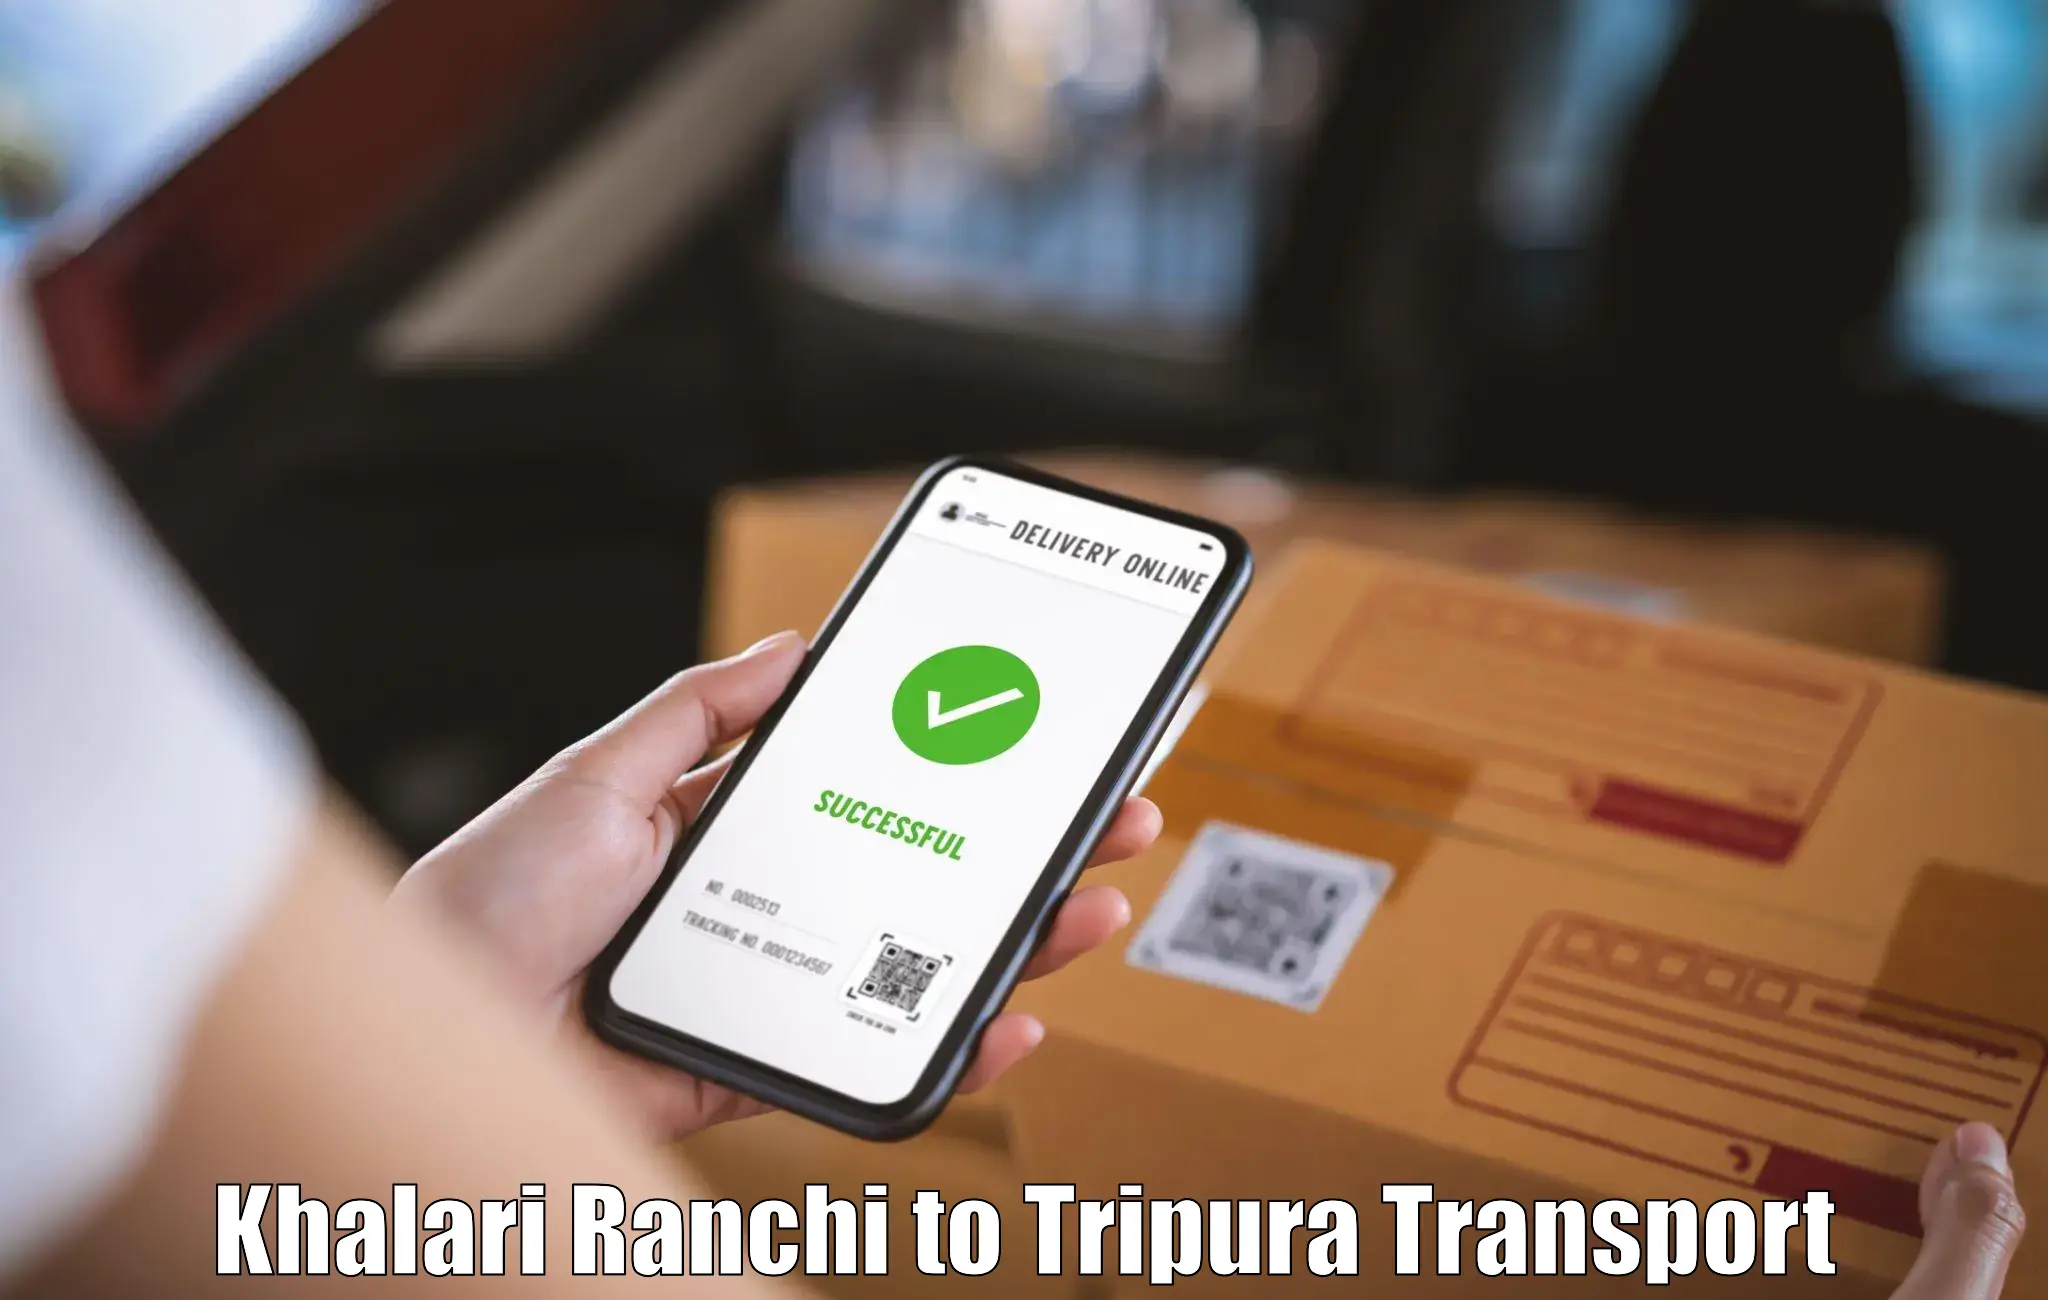 Online transport booking Khalari Ranchi to Udaipur Tripura